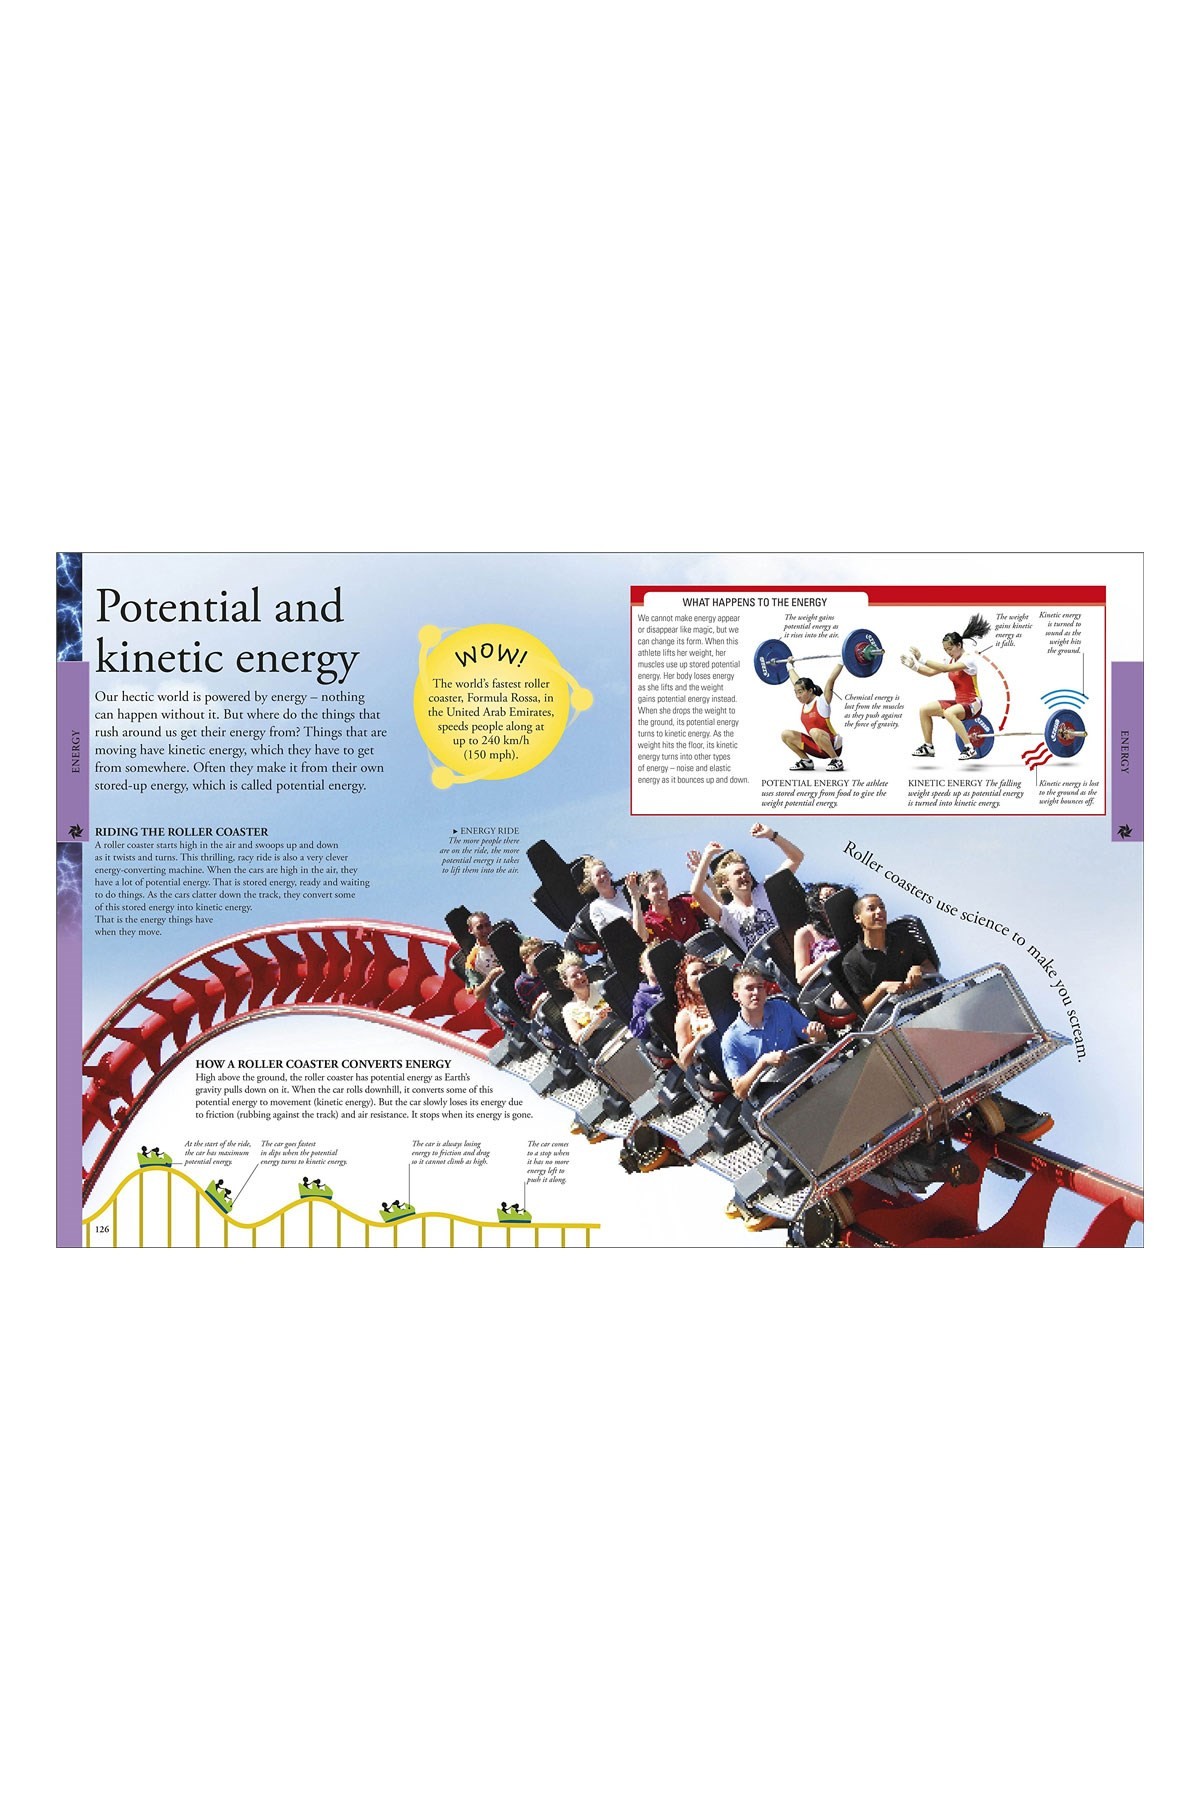 DK Yayıncılık Science: A Children's Encyclopedia